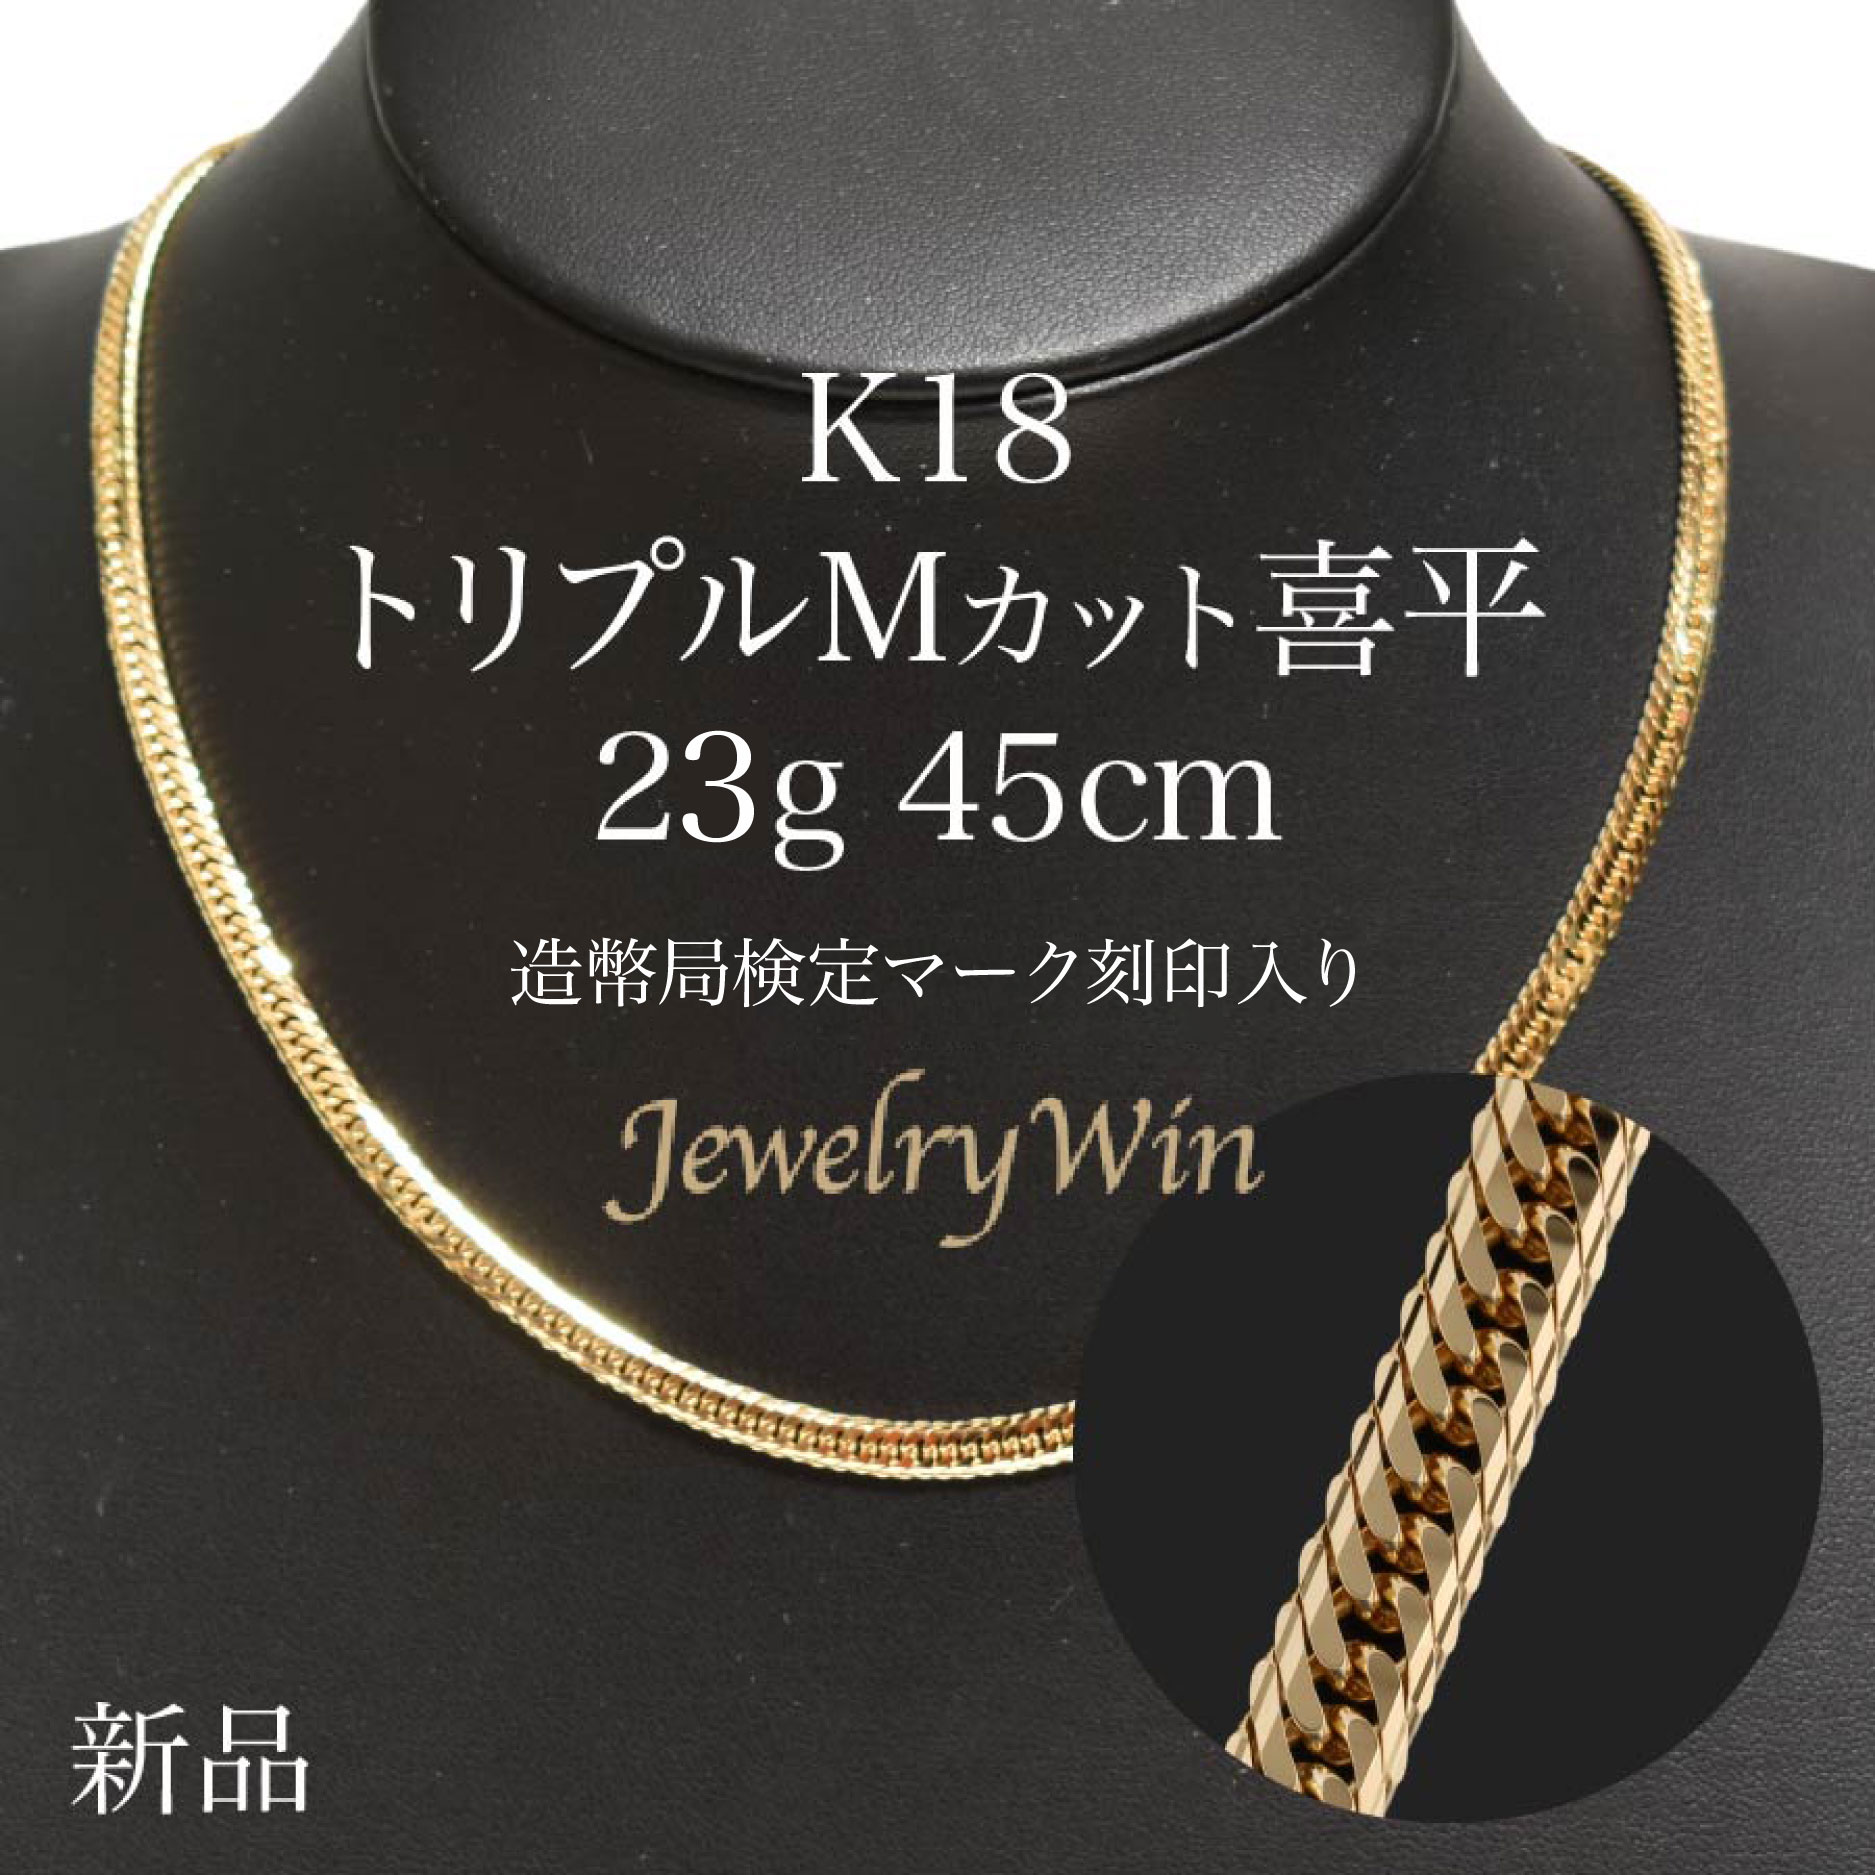 最高品質 日本製18金》喜平ネックレスチェーン 60cm 2,3g K18 通販